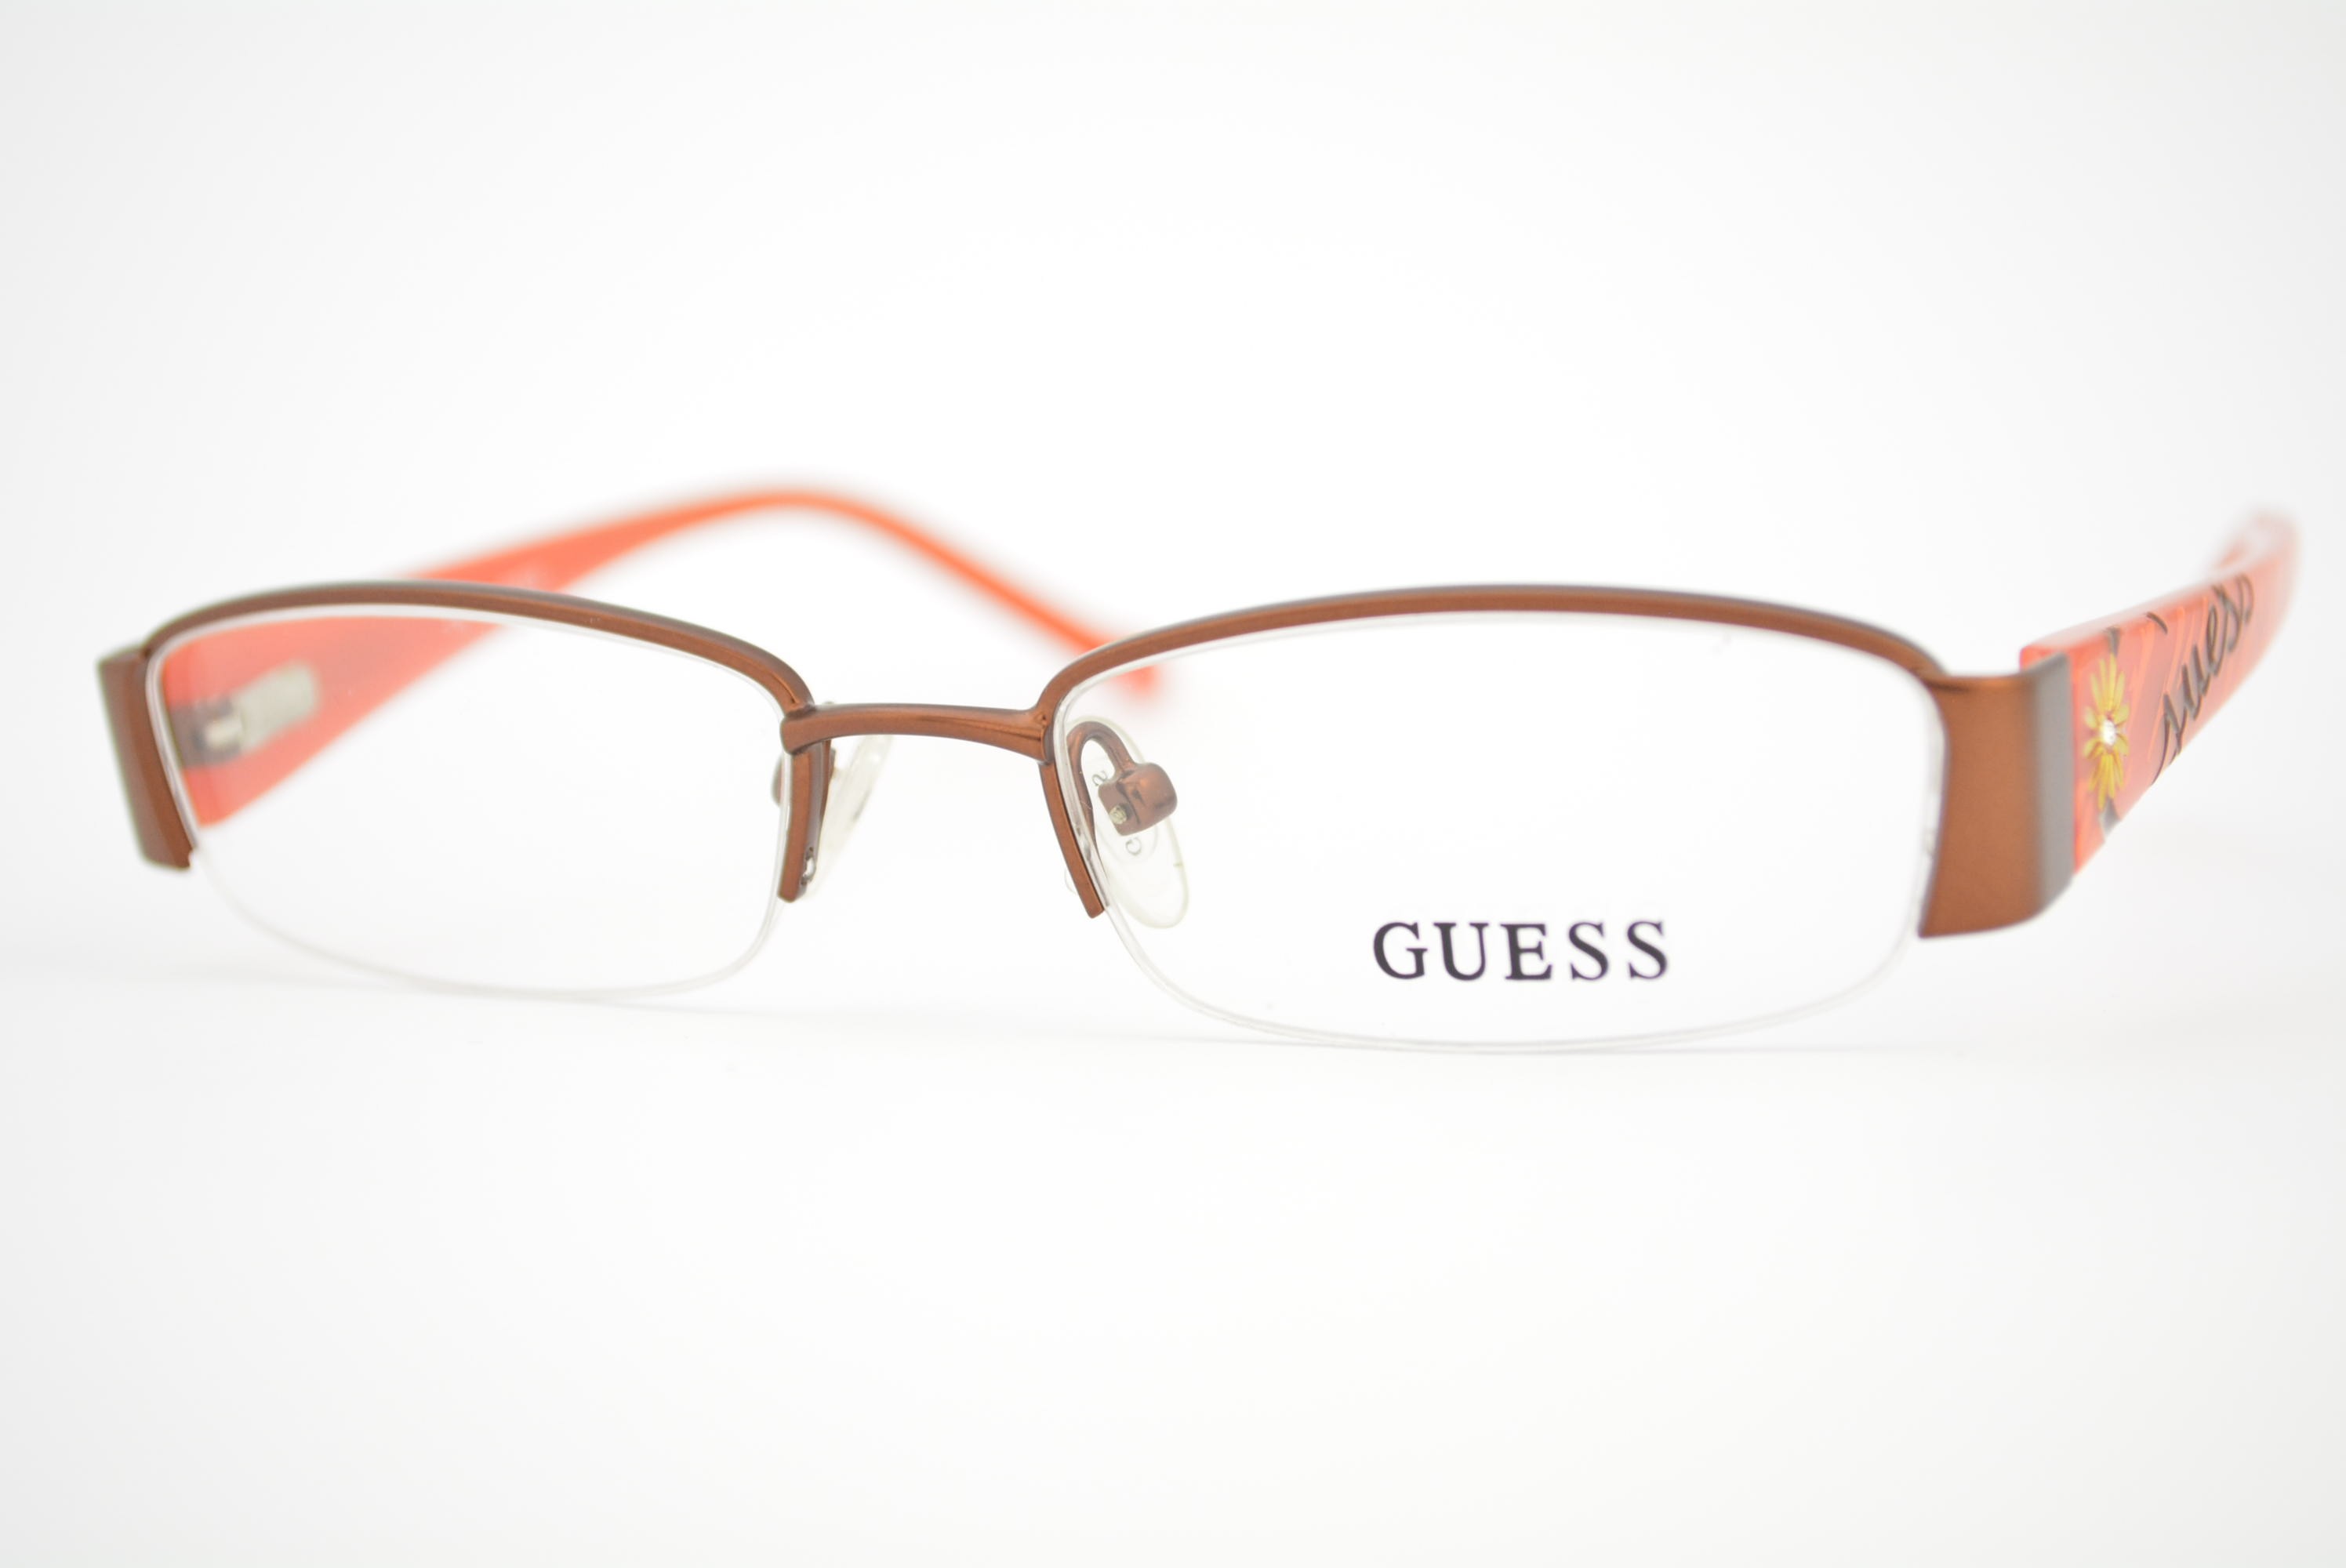 armação de óculos Guess Infantil mod gu9080 brn